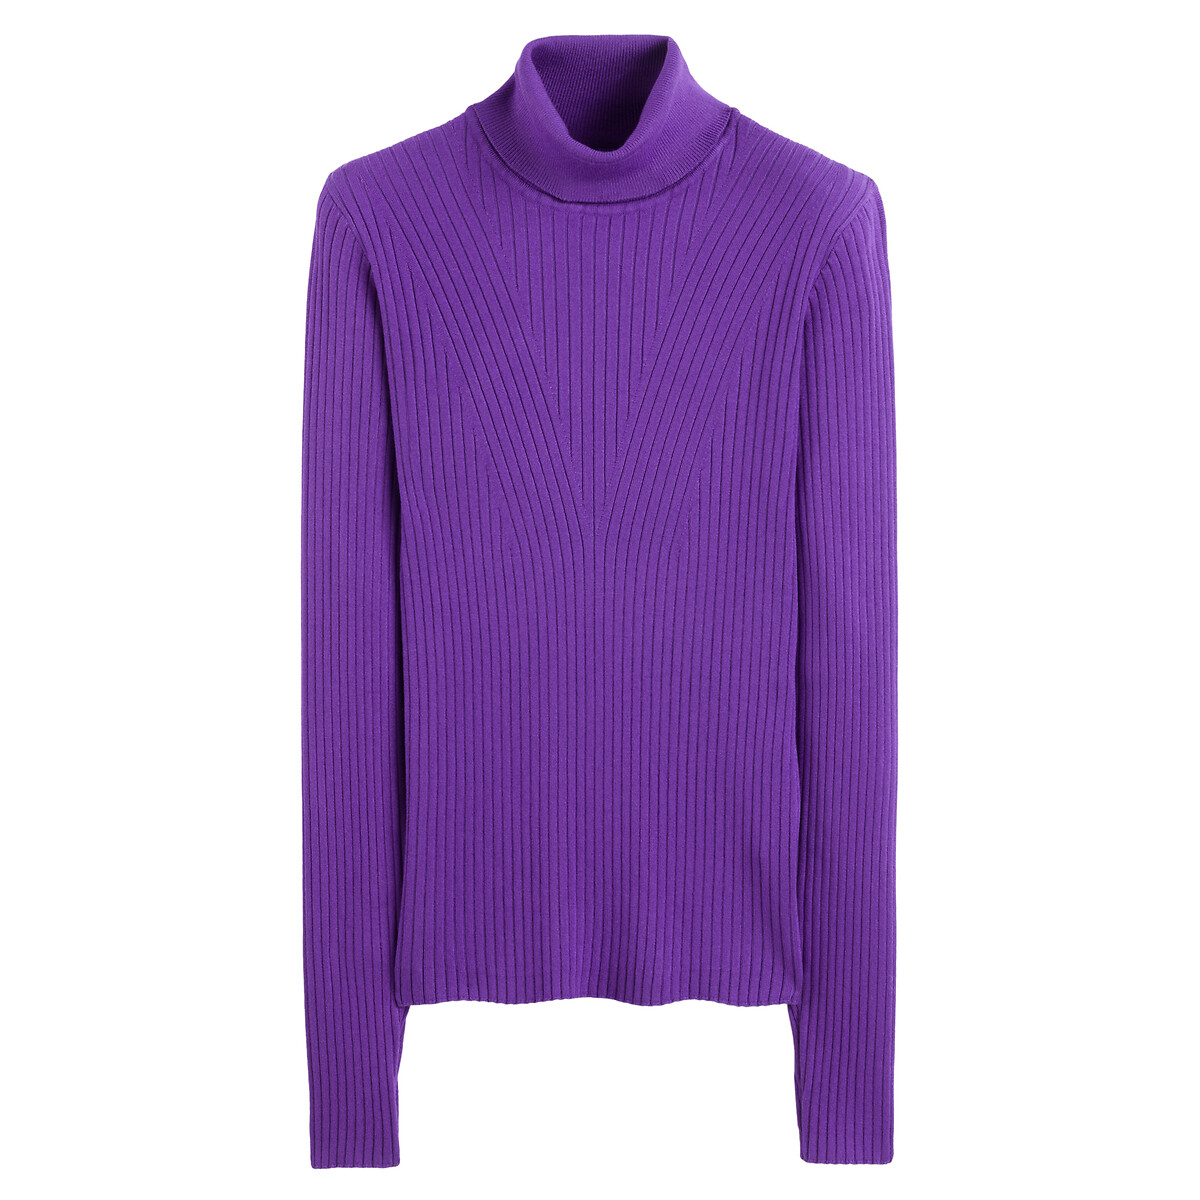 Пуловер Базовый с высоким воротником рифленый трикотаж S фиолетовый LaRedoute, размер S - фото 5